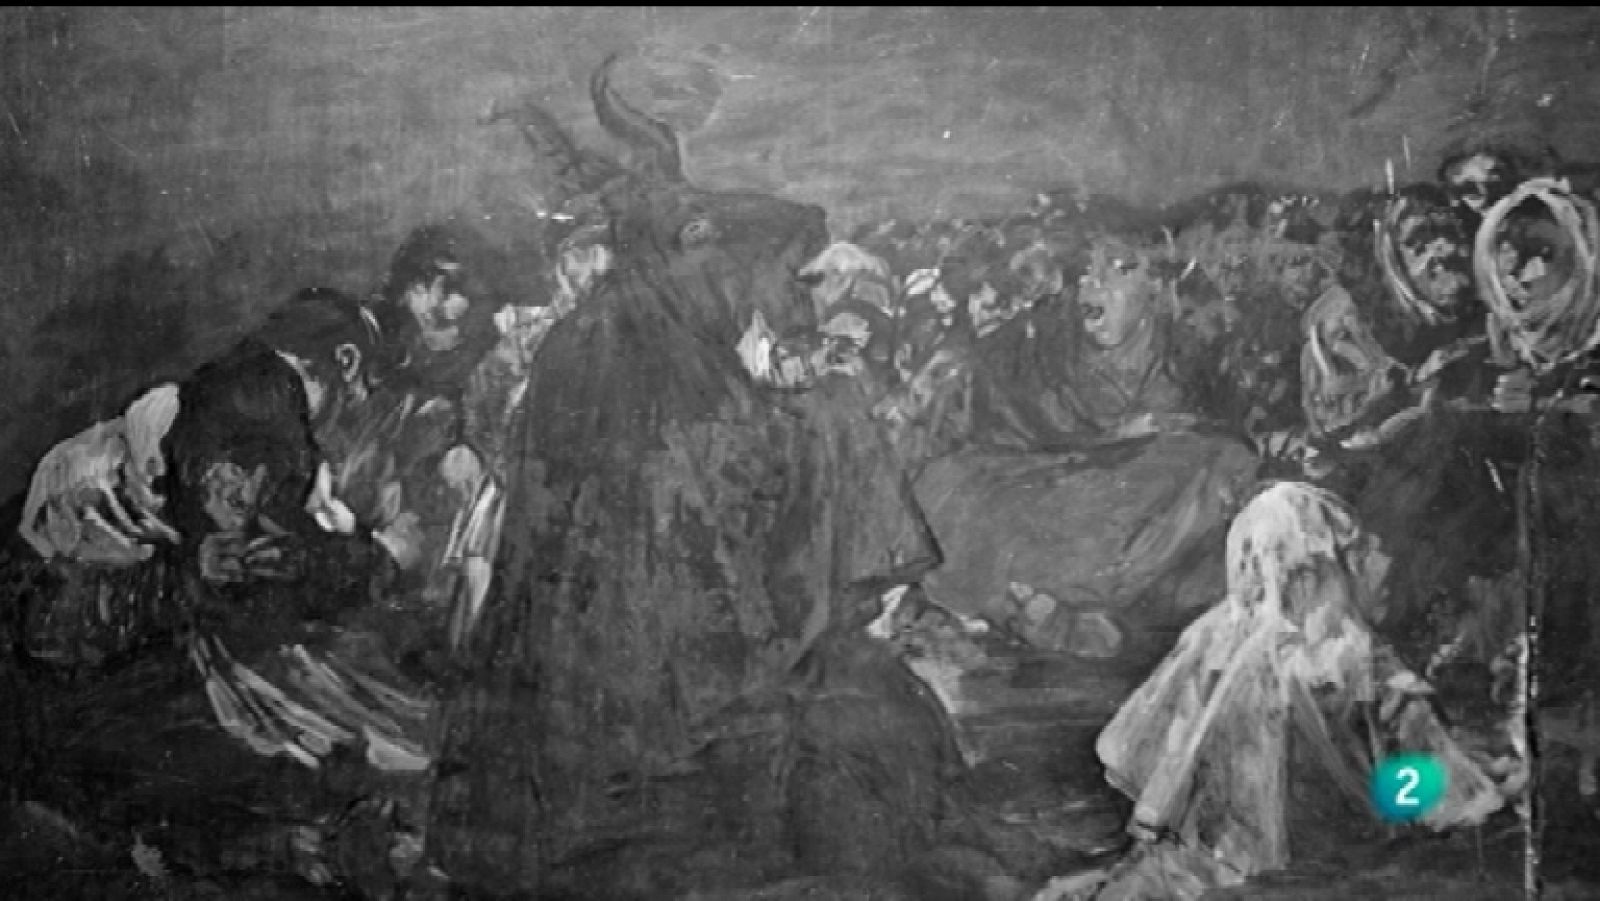 La mitad invisible - Las pinturas negras, de Francisco de Goya